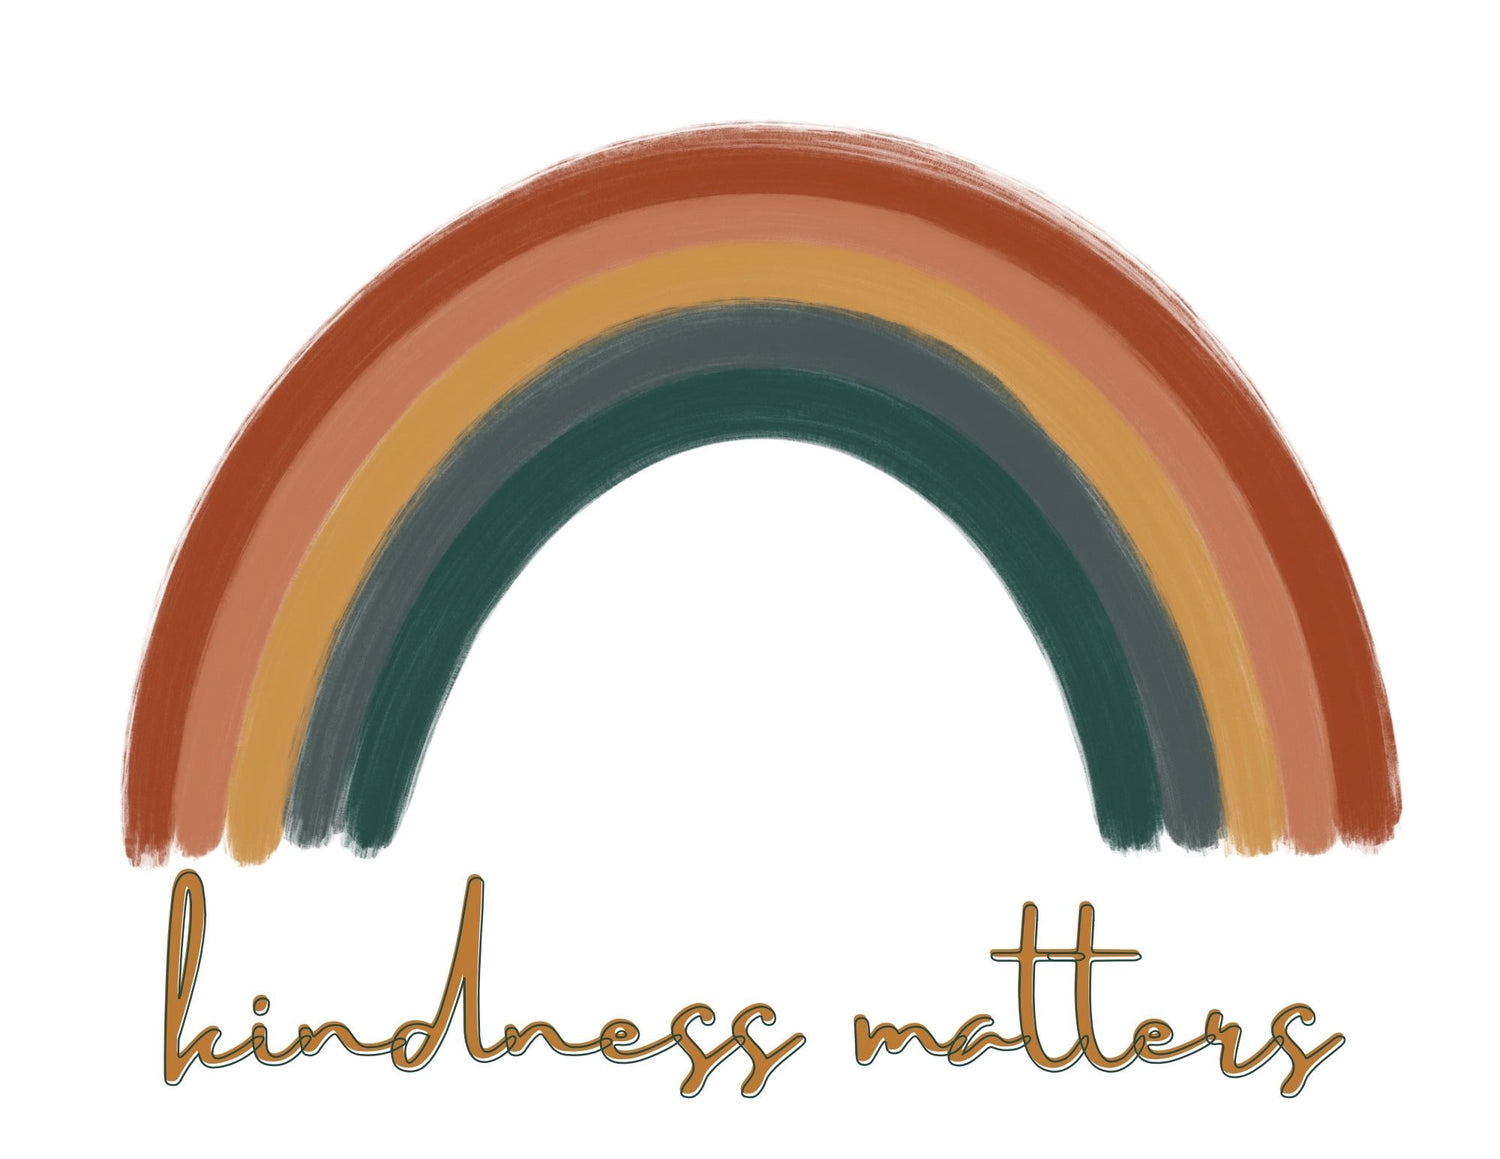 Spread Kindness with a Rainbow